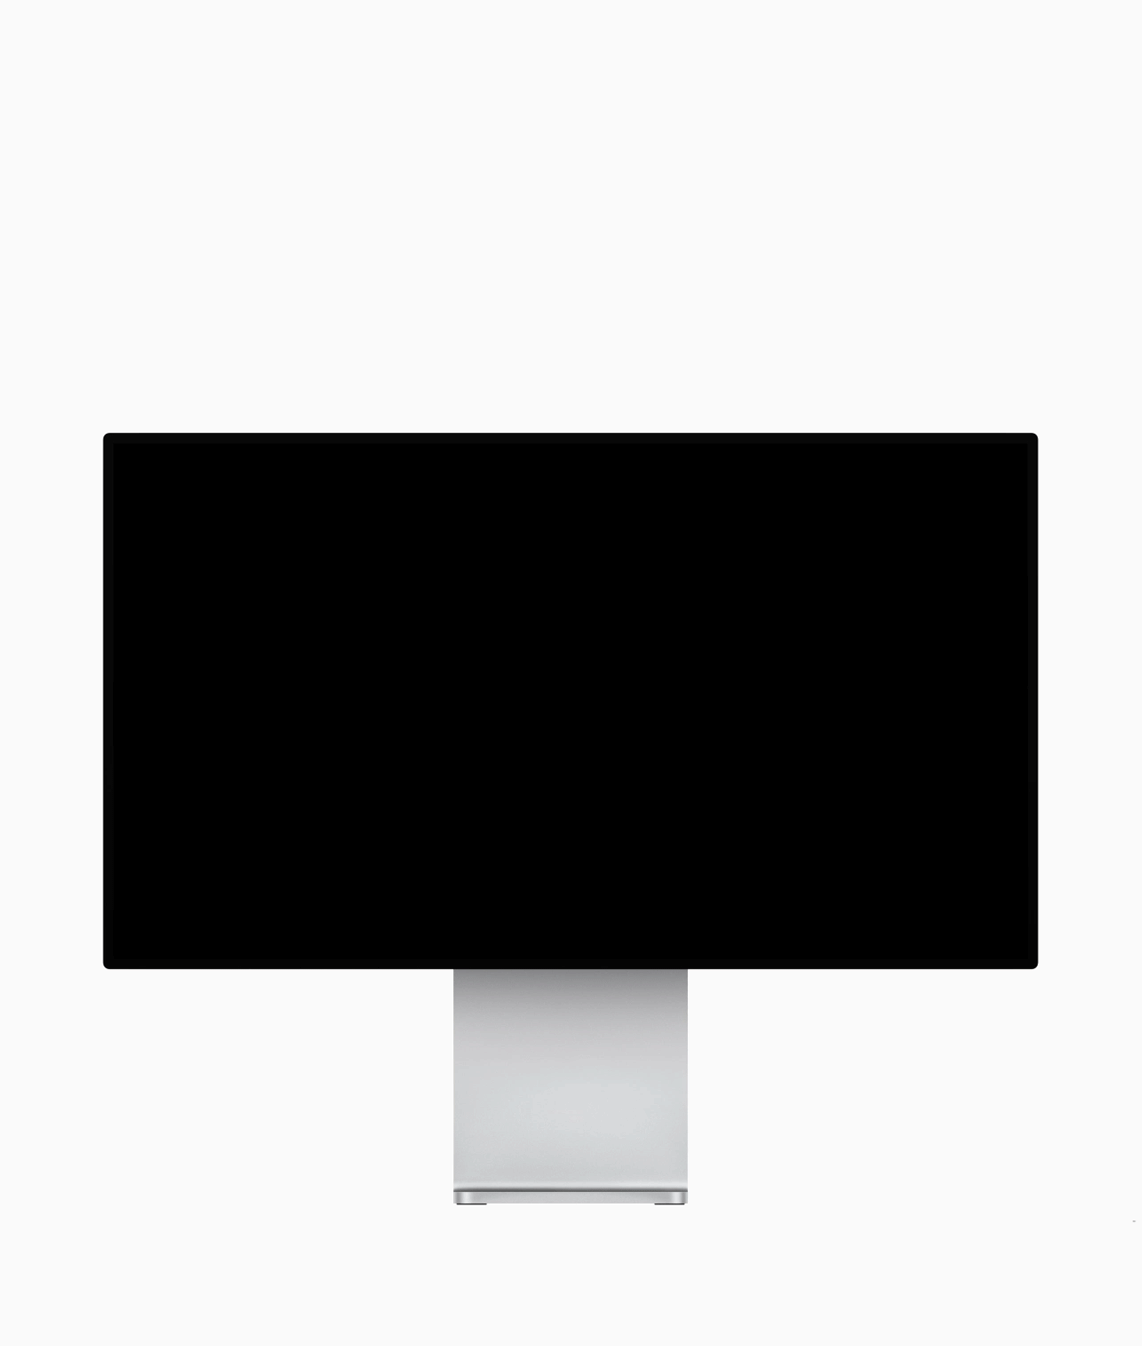 Apple Pro Display XDR, ecco il super monitor Apple 6K